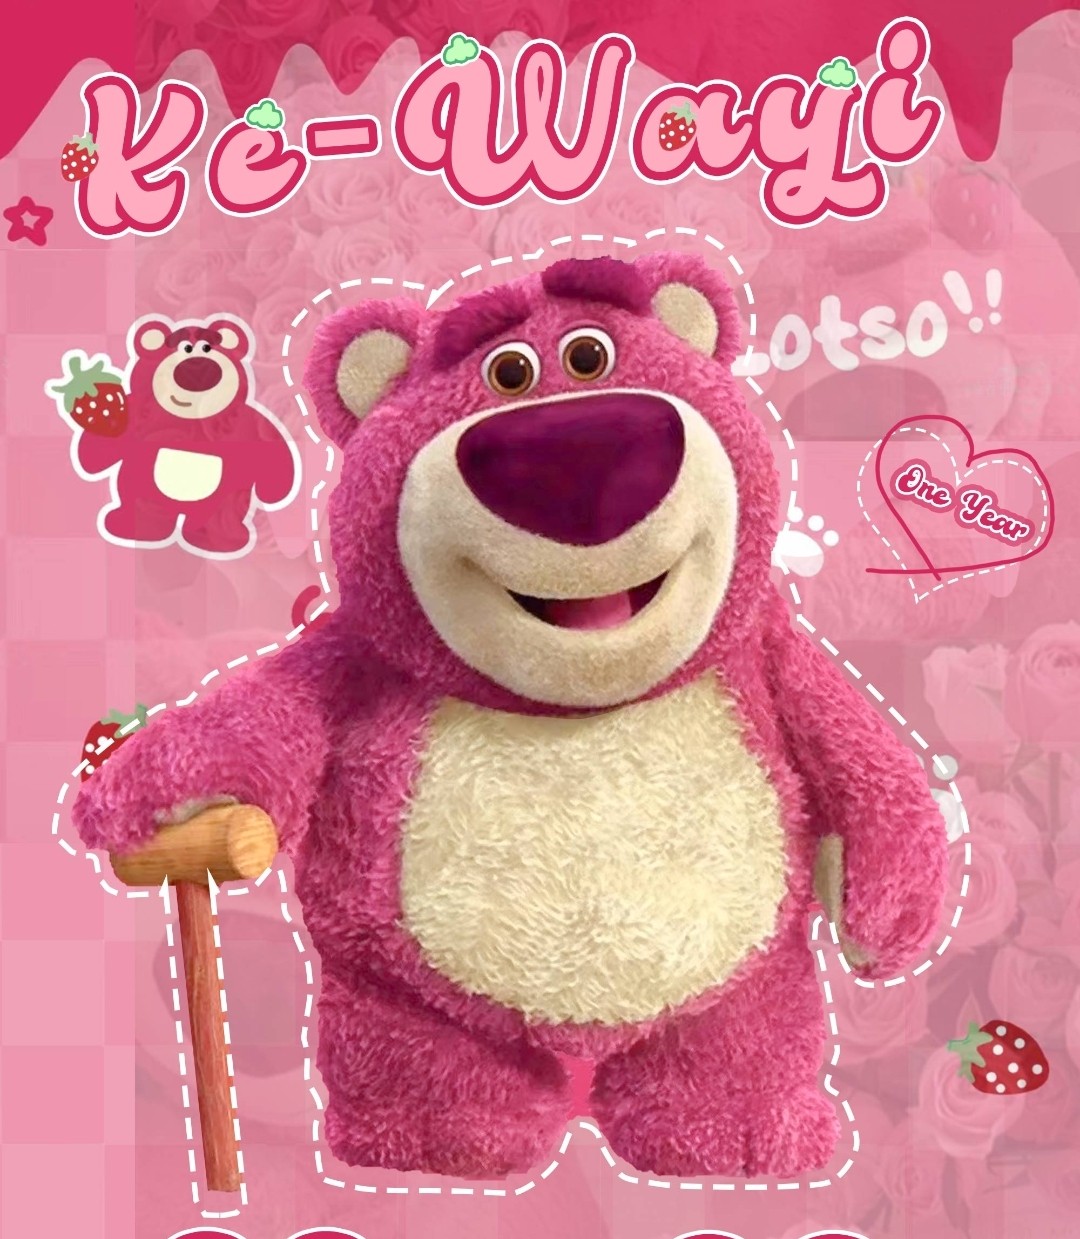 KEWAYI美瞳 九月开学季 限量1000份正版草莓熊免费送